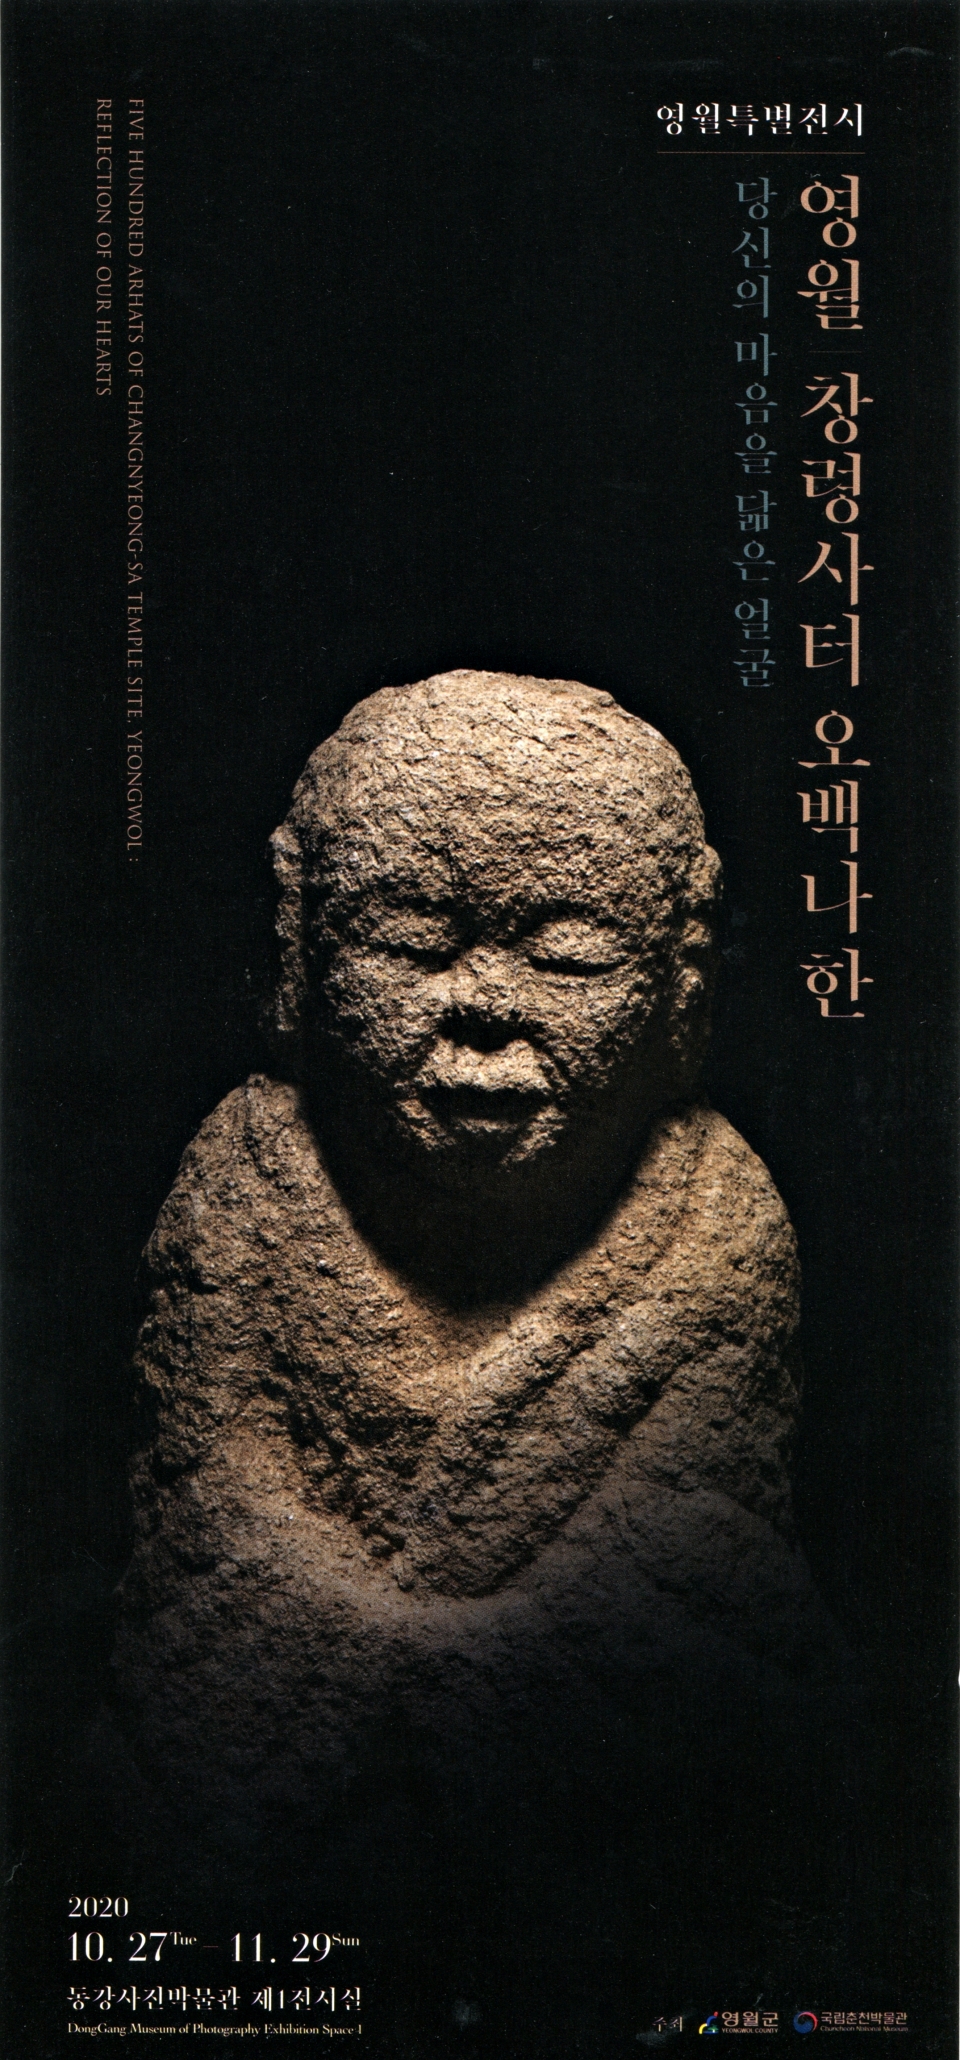 ‘영월 창령사터 오백나한’ 특별전이 11월29일까지 동강사진박물관 제1전시실에서 열린다.